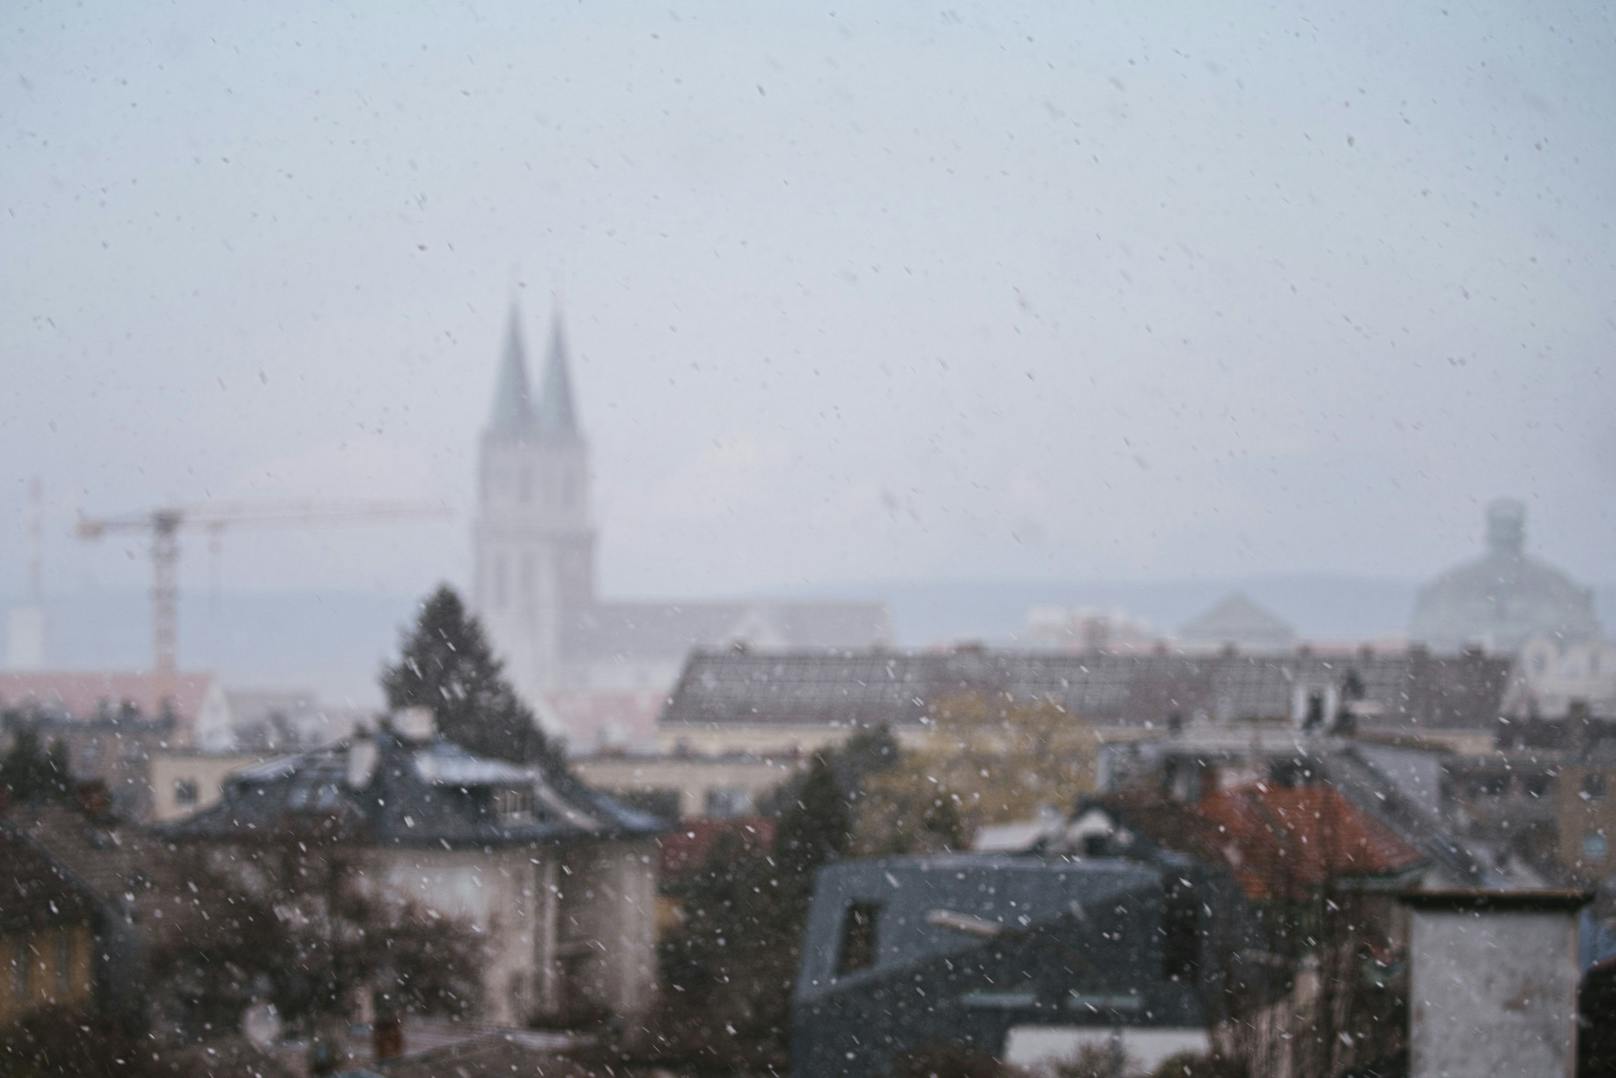 Schneefall in Klosterneuburg nahe Wien, aufgenommen am 31.03.2020. Symbolbild